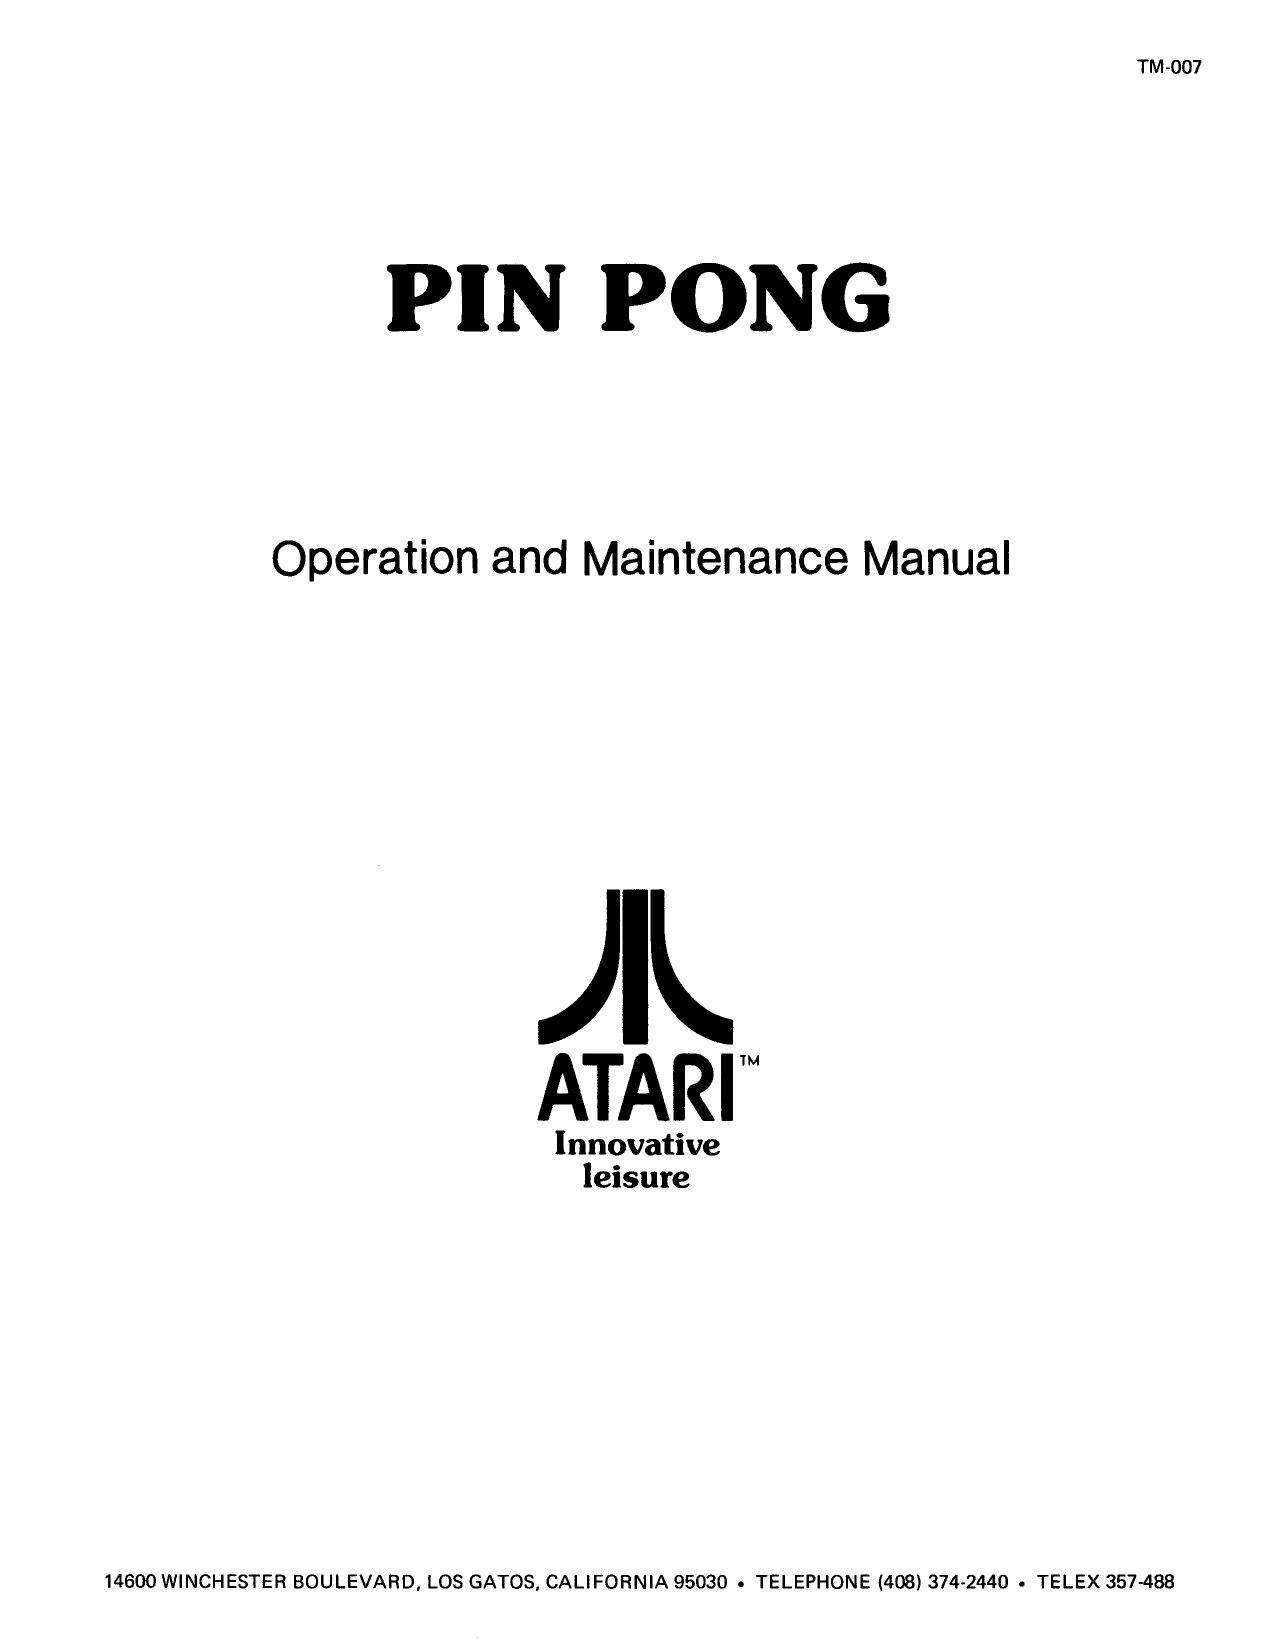 Pin Pong TM-007